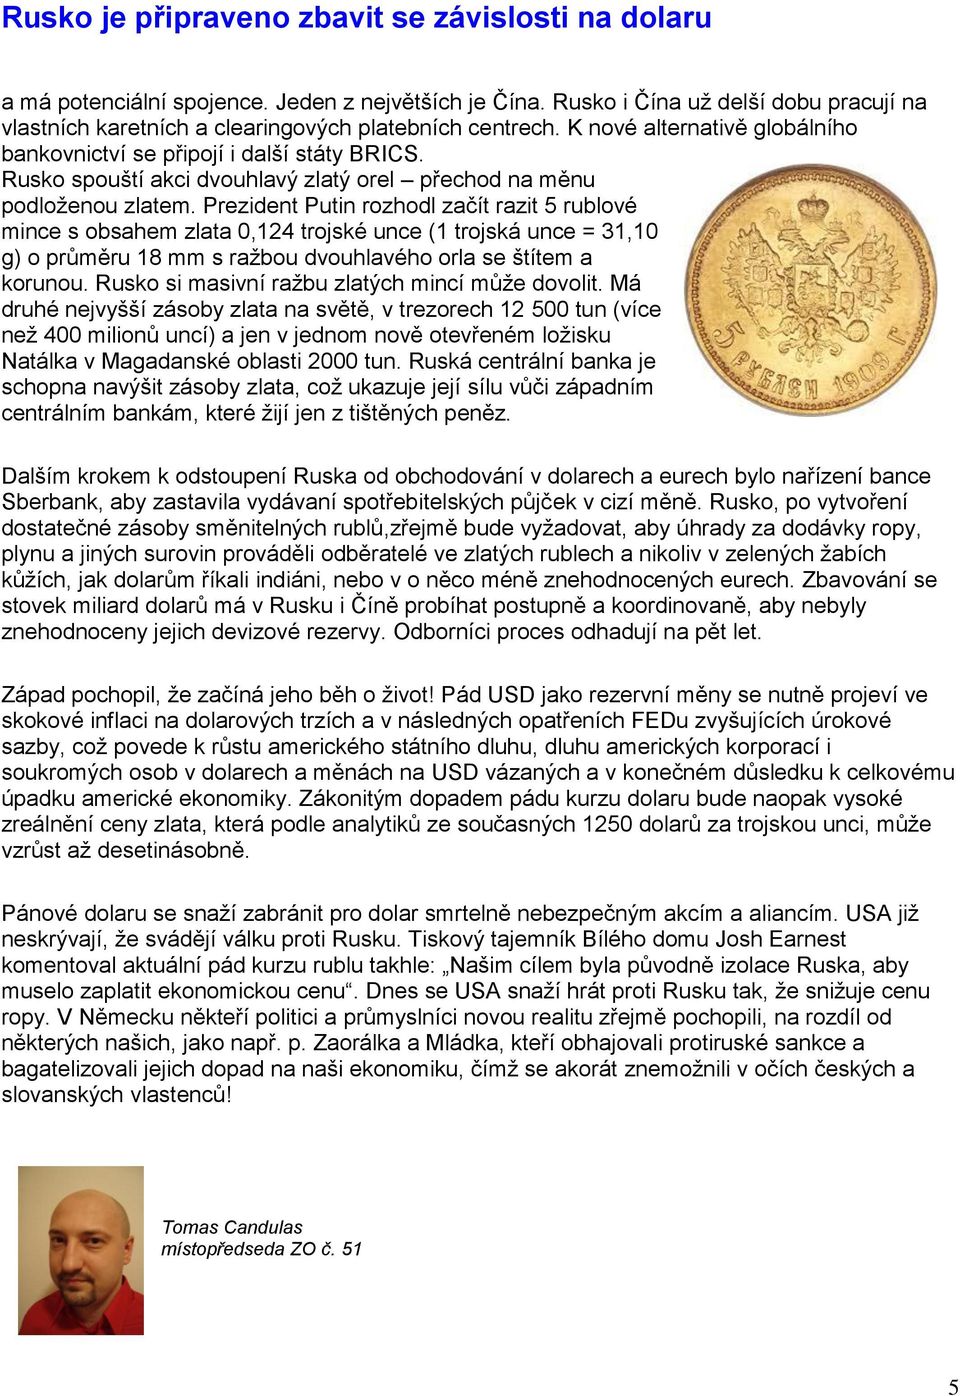 Prezident Putin rozhodl začít razit 5 rublové mince s obsahem zlata 0,124 trojské unce (1 trojská unce = 31,10 g) o průměru 18 mm s ražbou dvouhlavého orla se štítem a korunou.